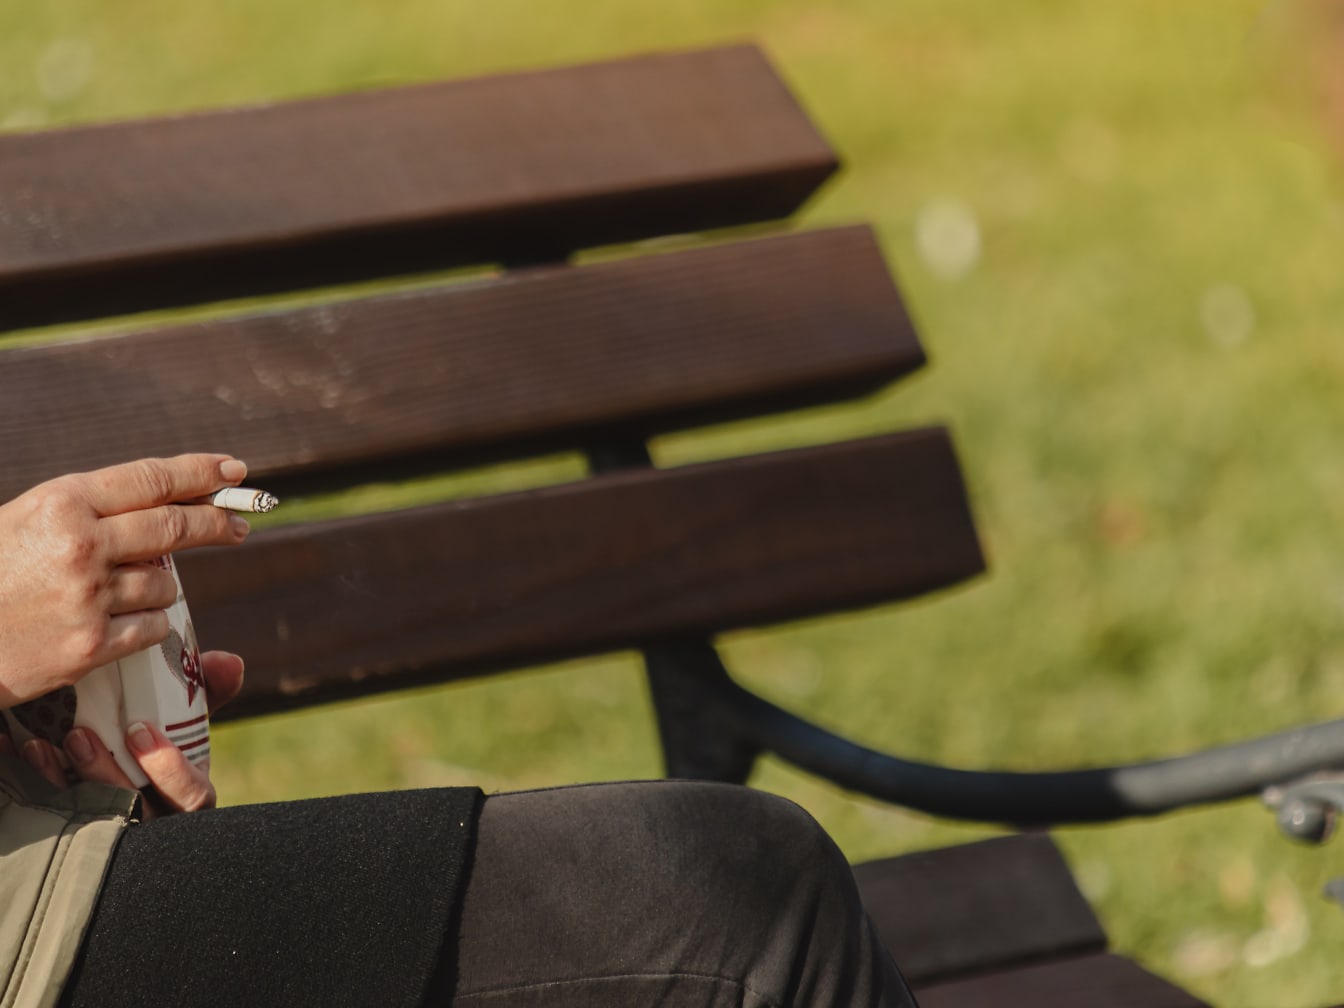 Άτομο που κάθεται και κρατά κούπα και τσιγάρο στα χέρια